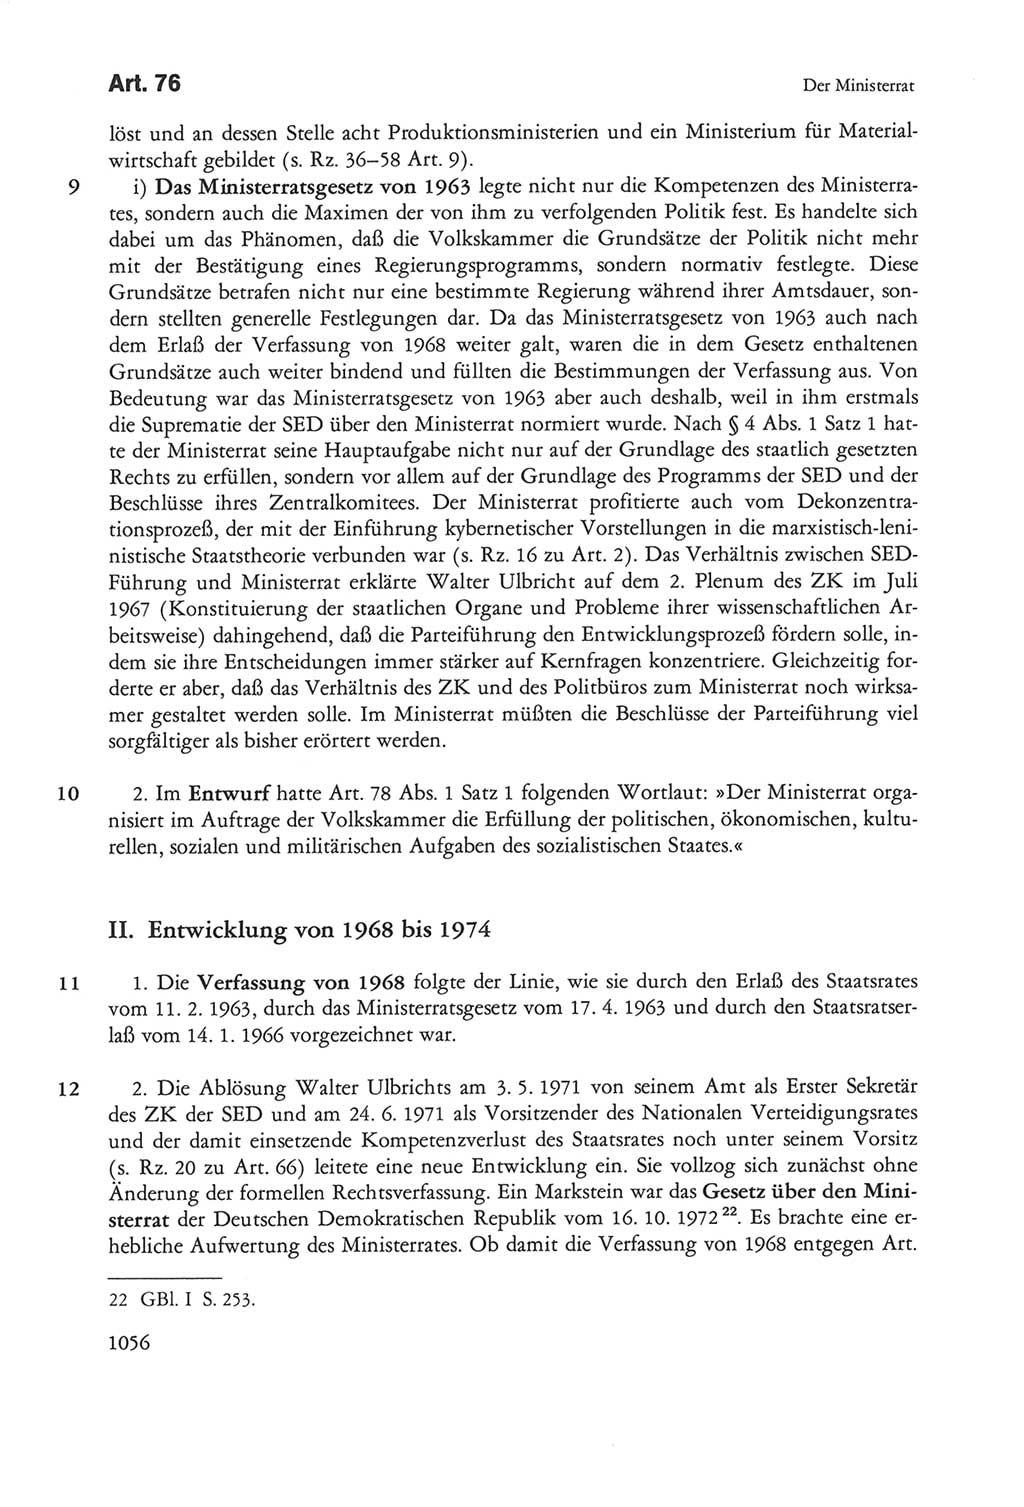 Die sozialistische Verfassung der Deutschen Demokratischen Republik (DDR), Kommentar 1982, Seite 1056 (Soz. Verf. DDR Komm. 1982, S. 1056)